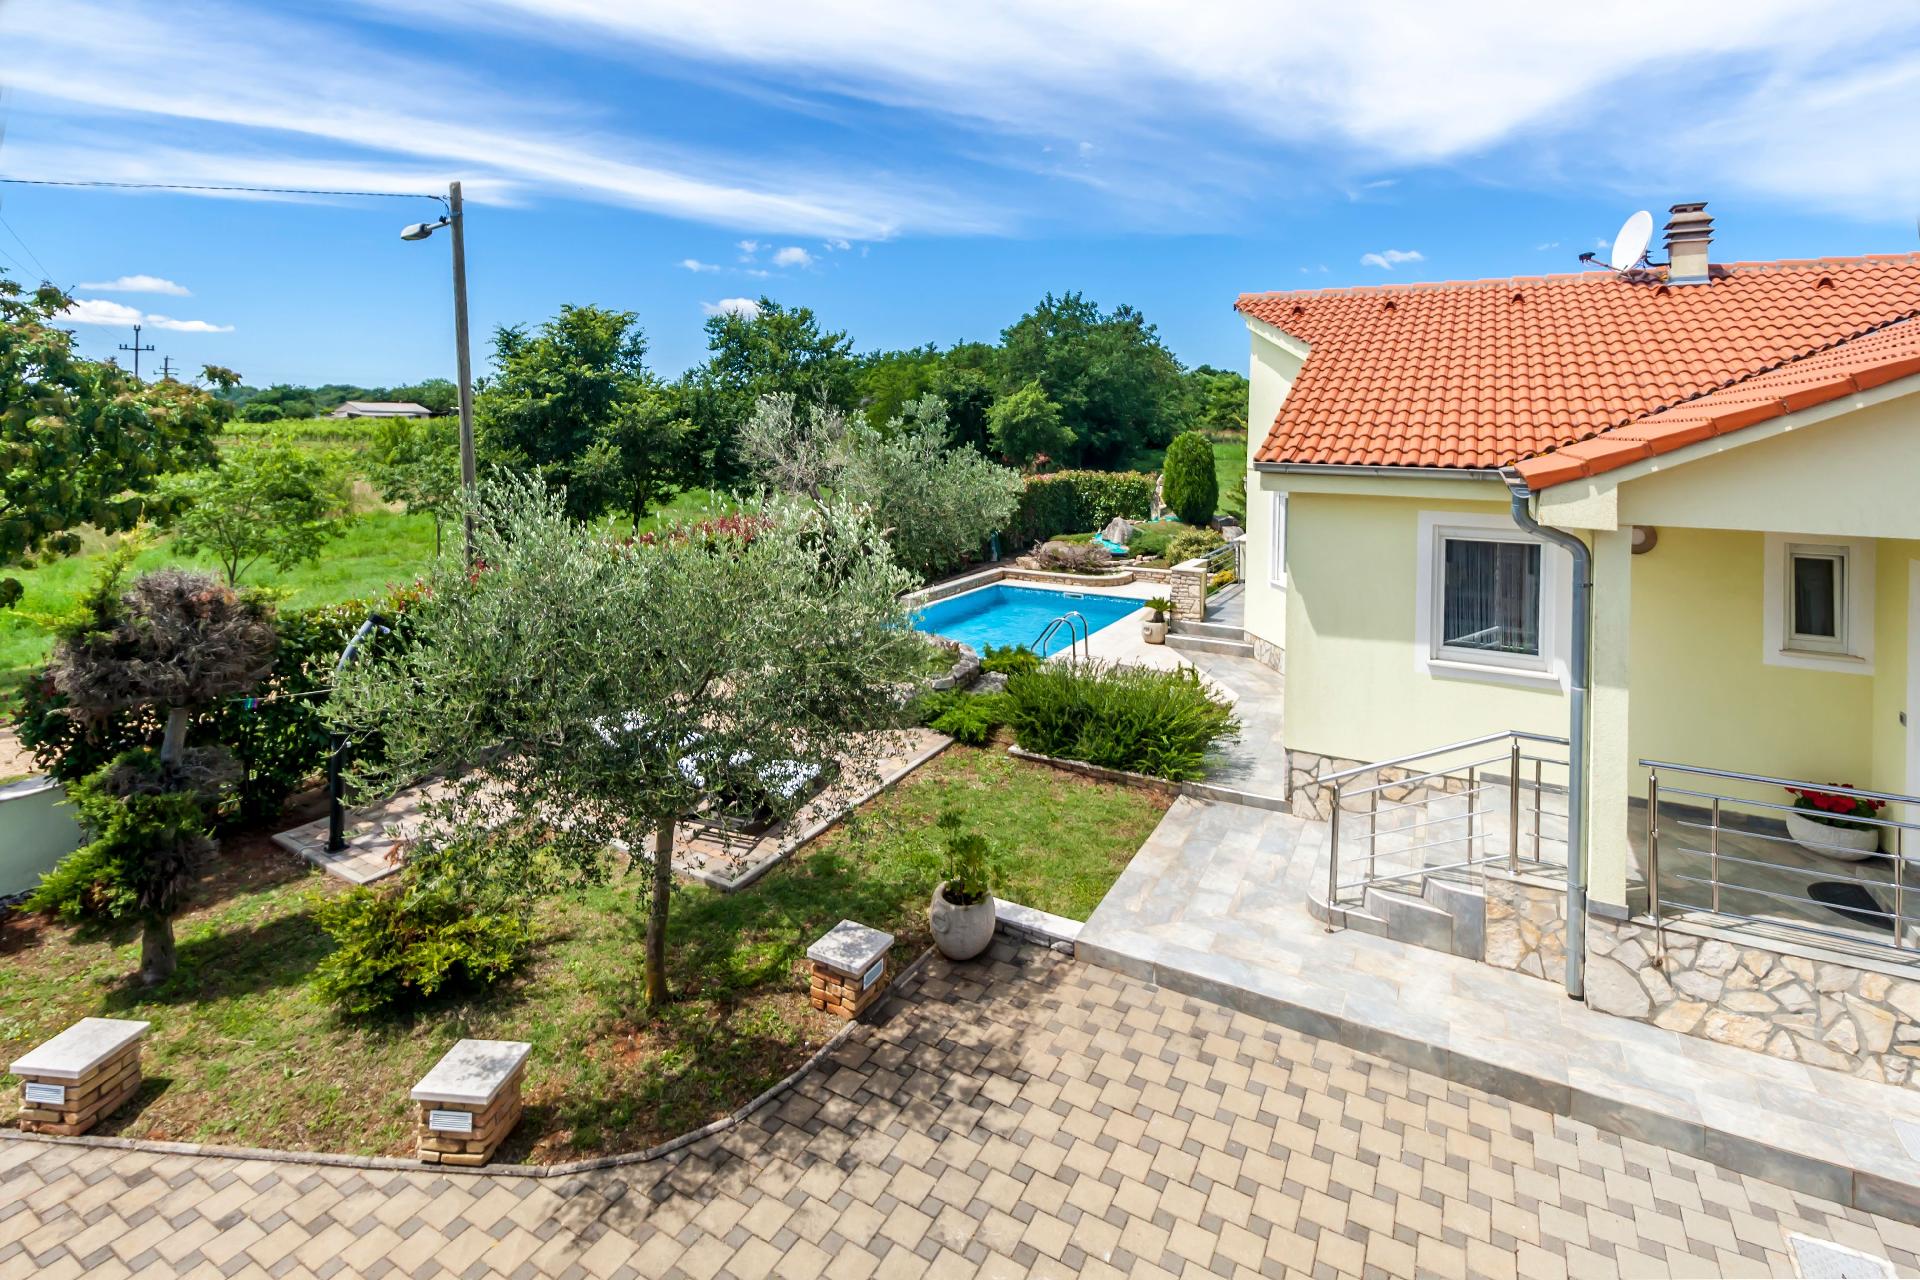 Stilvolle Ferienvilla mit Garten, Terrasse, Spielp Ferienhaus in Kroatien